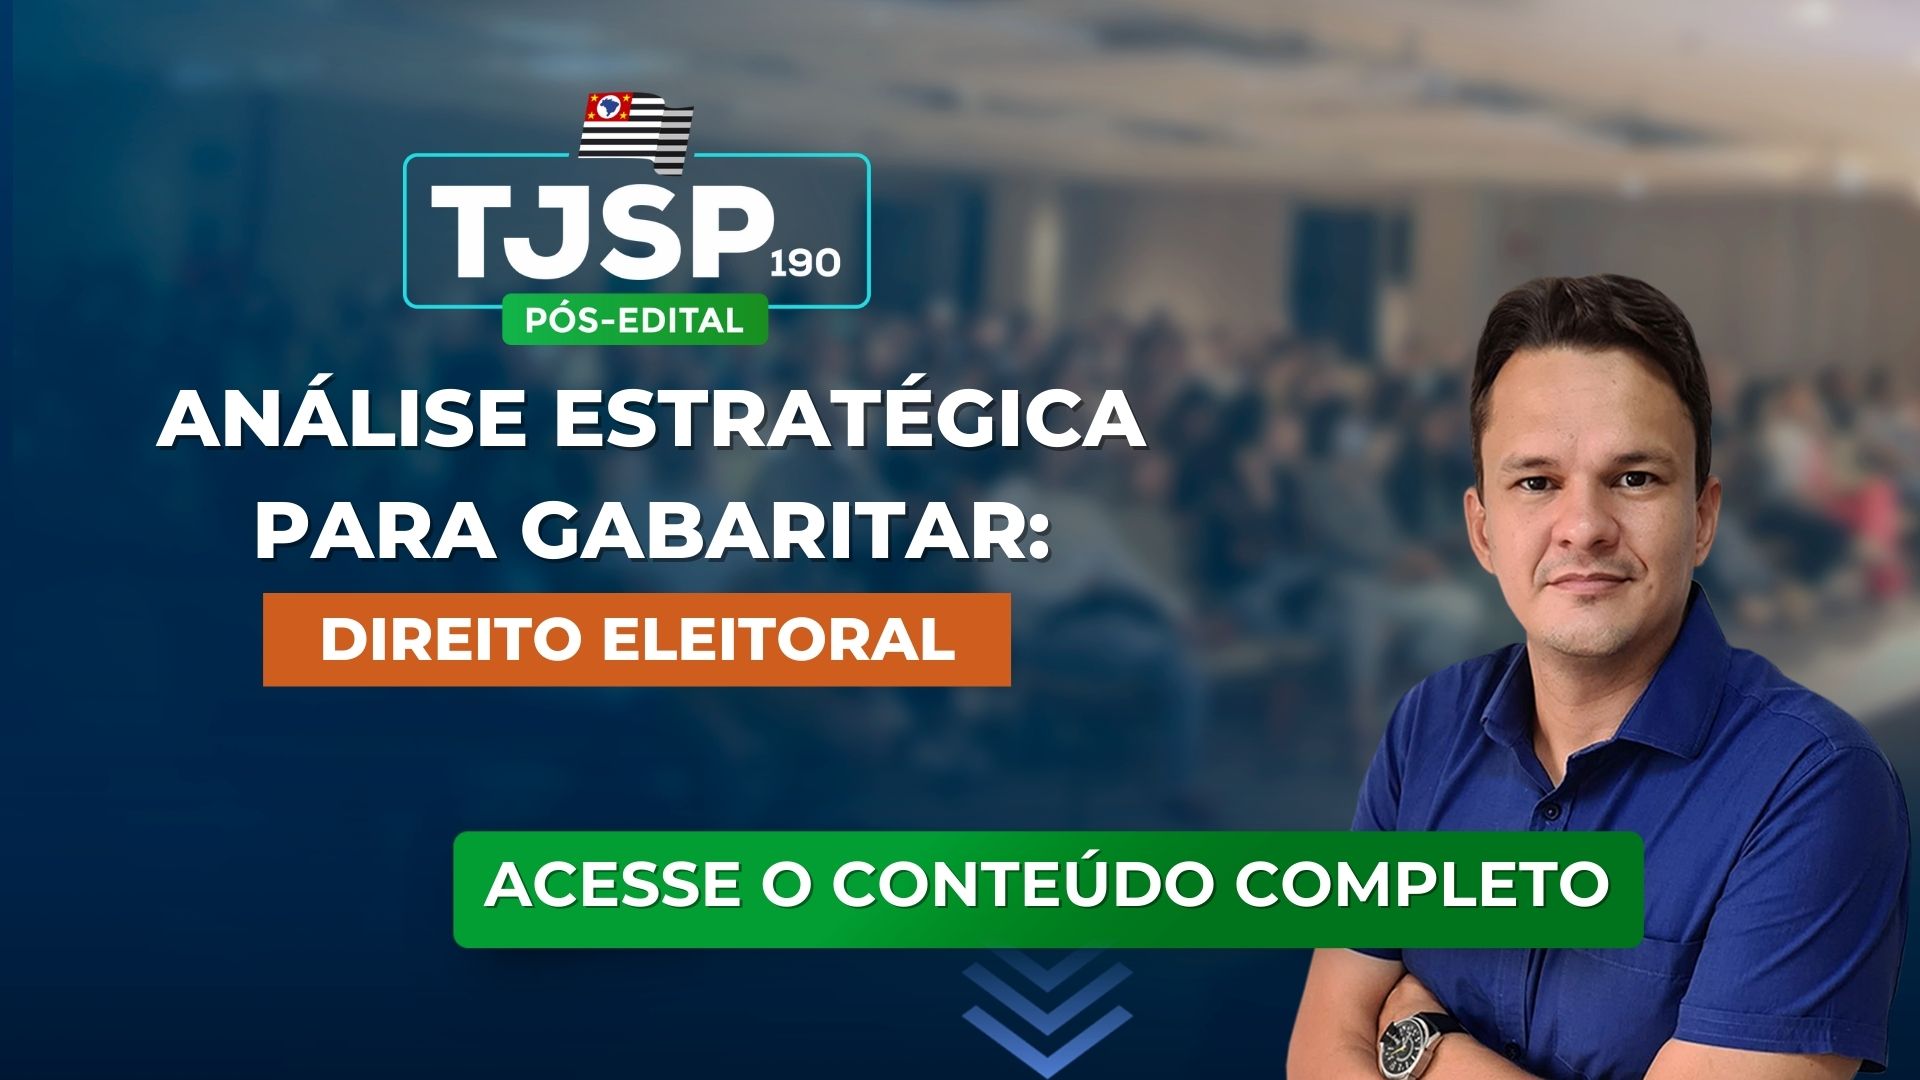 TJSP 190: Análise estratégica para gabaritar Direito Eleitoral